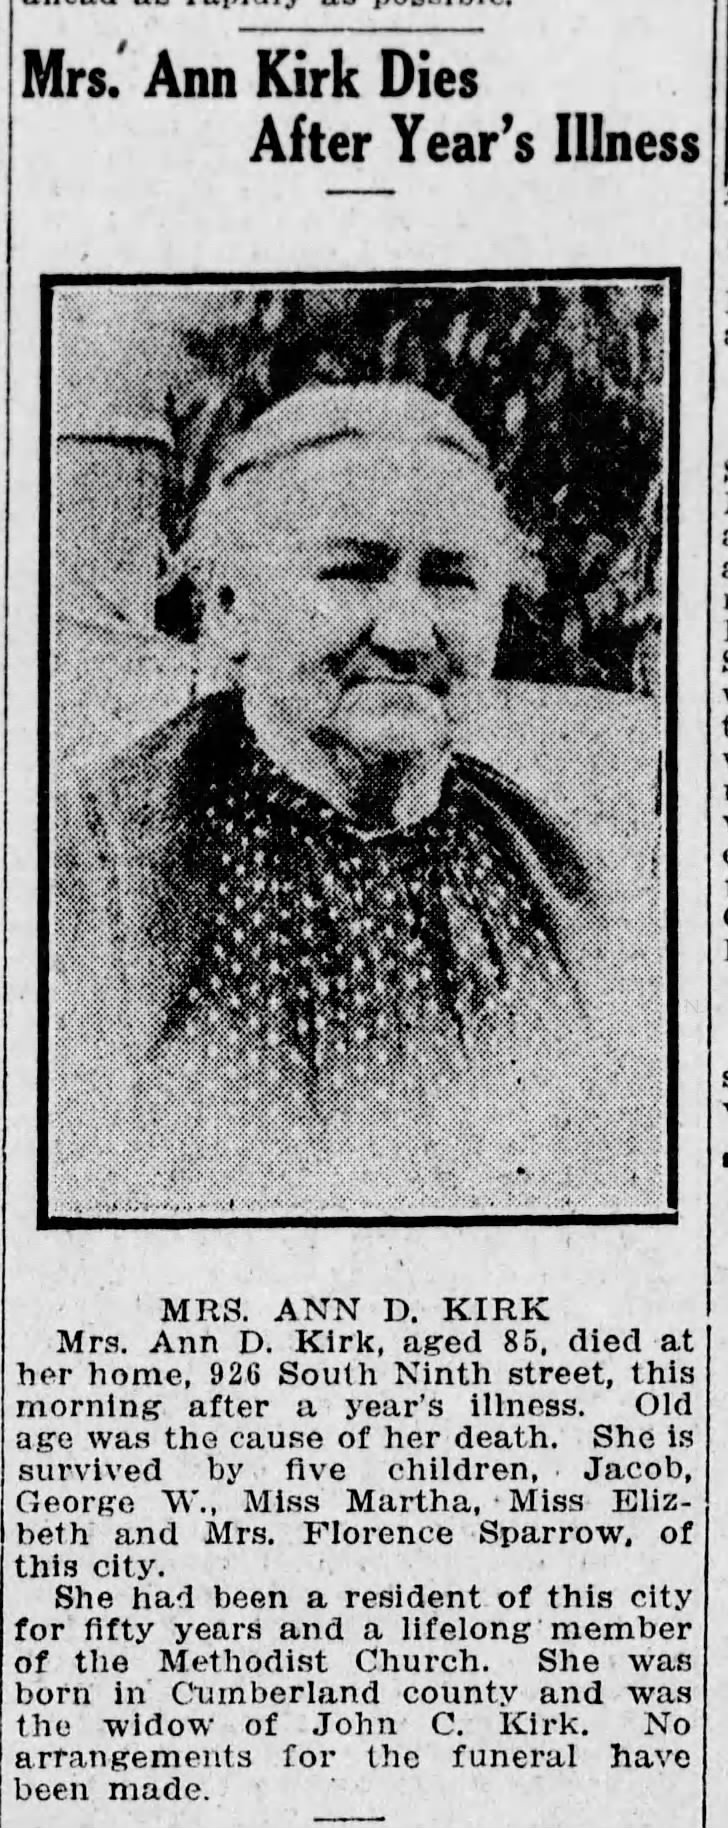 Ann Kirk Dies
22 November 1916